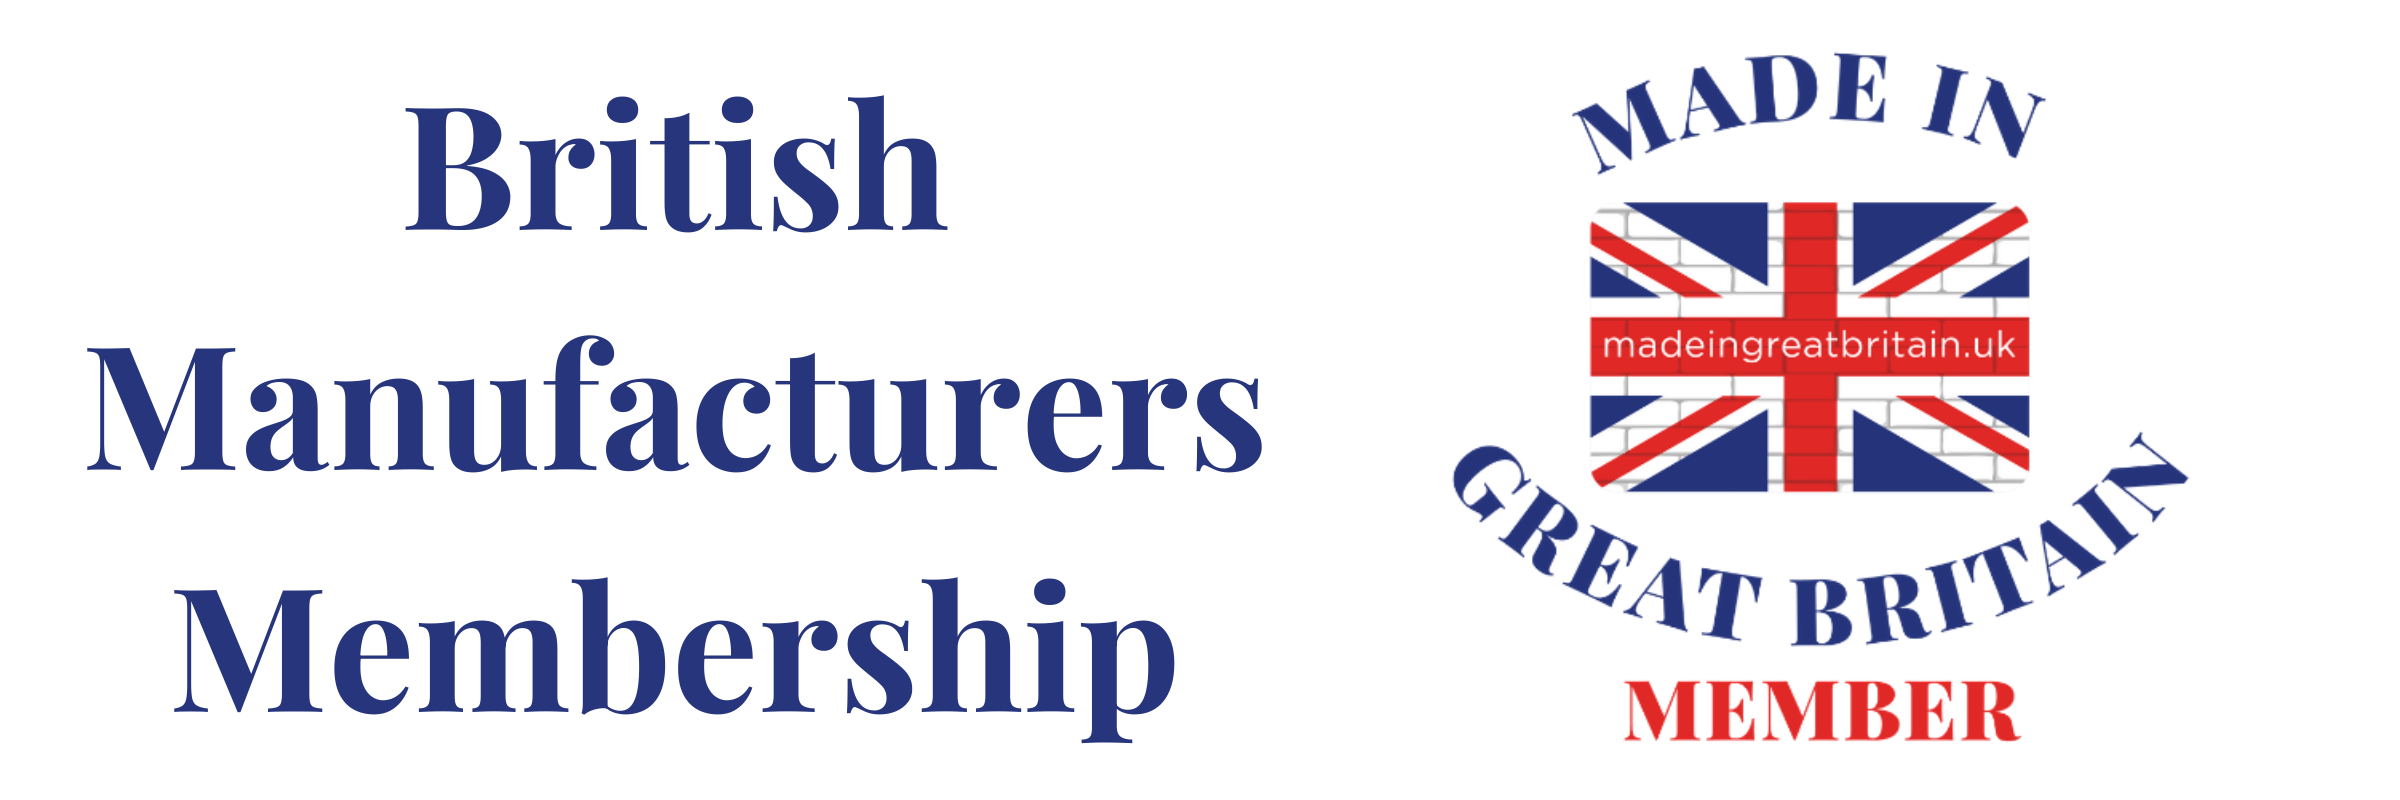 British manufacturers Membership (1)